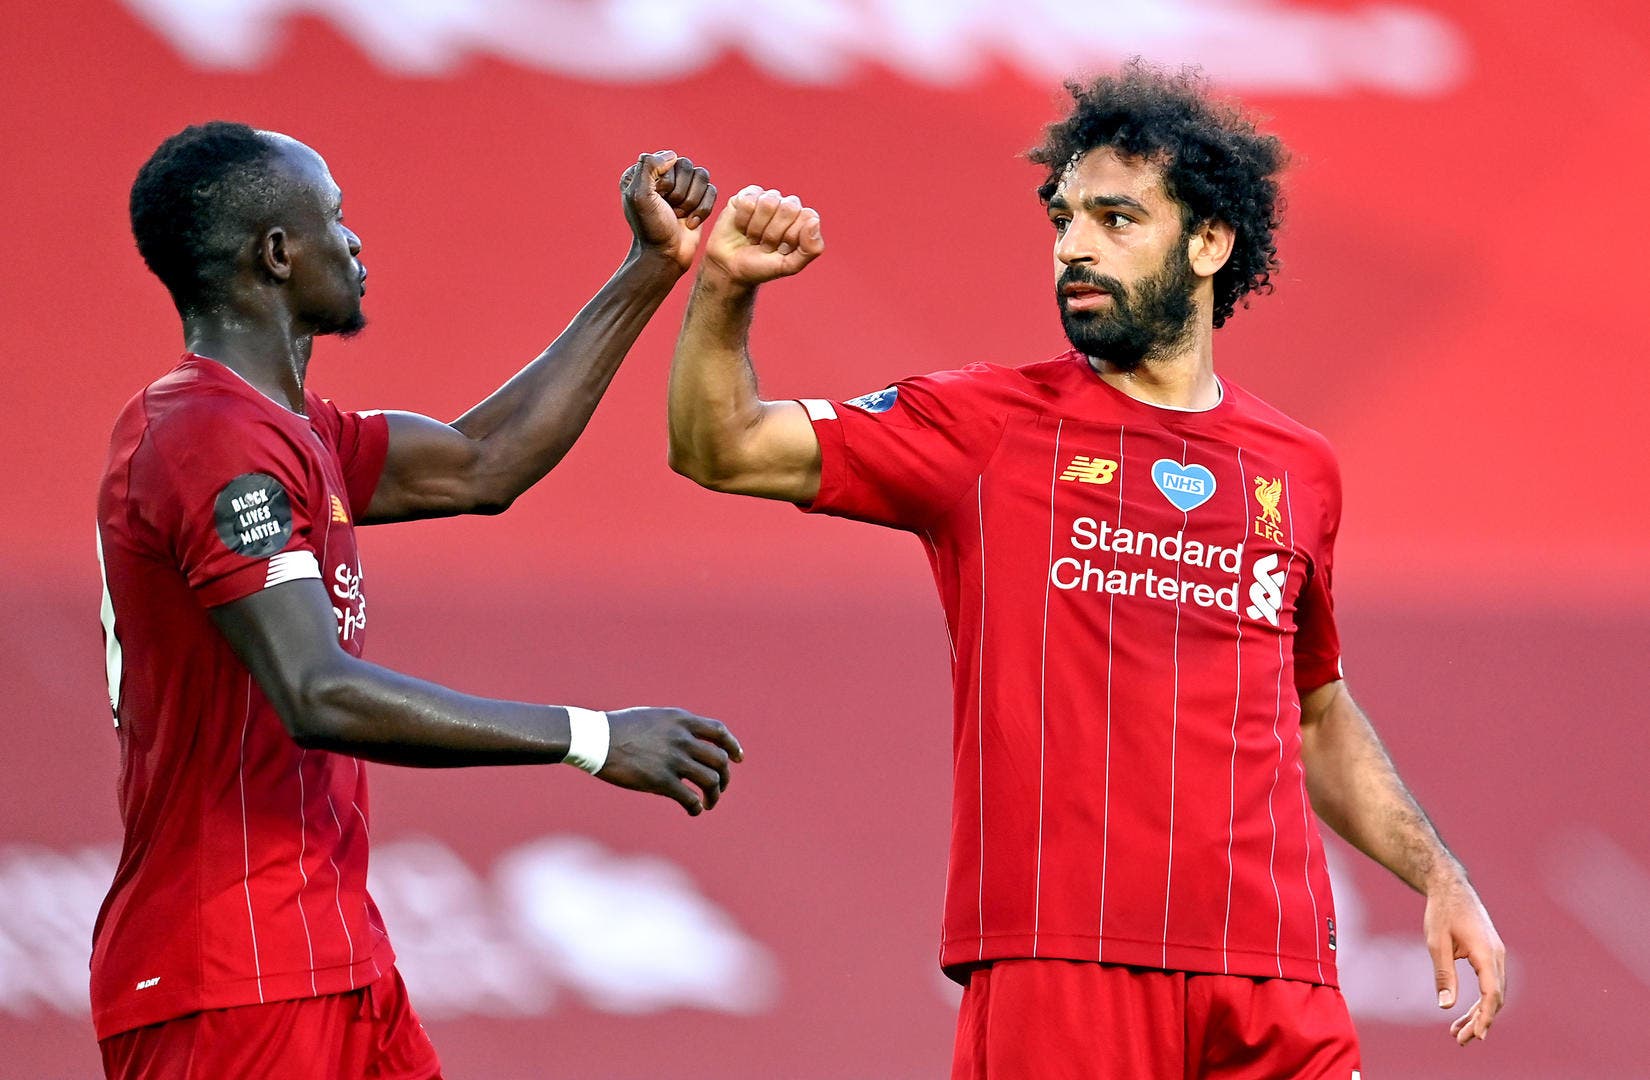 Relation tendue entre Mané et Salah ? Robertson fait la mise au point